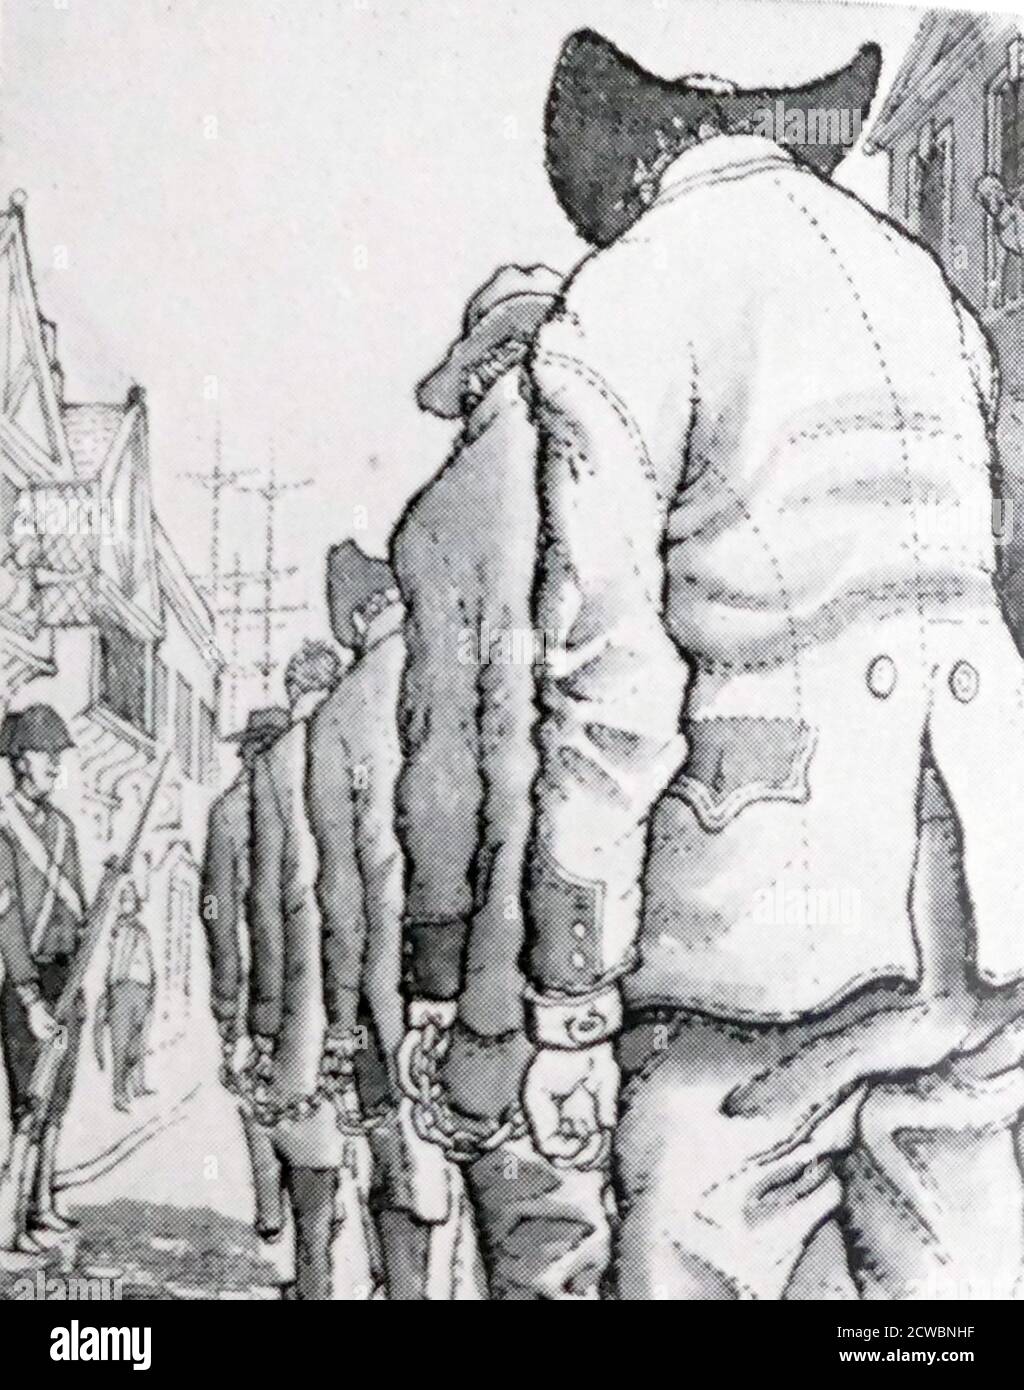 Abbildung zeigt Gefangene, die in Ketten zu einem Gefängnisschiff marschieren oder für die Deportation ein Gefängnisschiff ausweisen. Diese Praxis war am weitesten verbreitet im siebzehnten und achtzehnten Jahrhundert Großbritannien Stockfoto